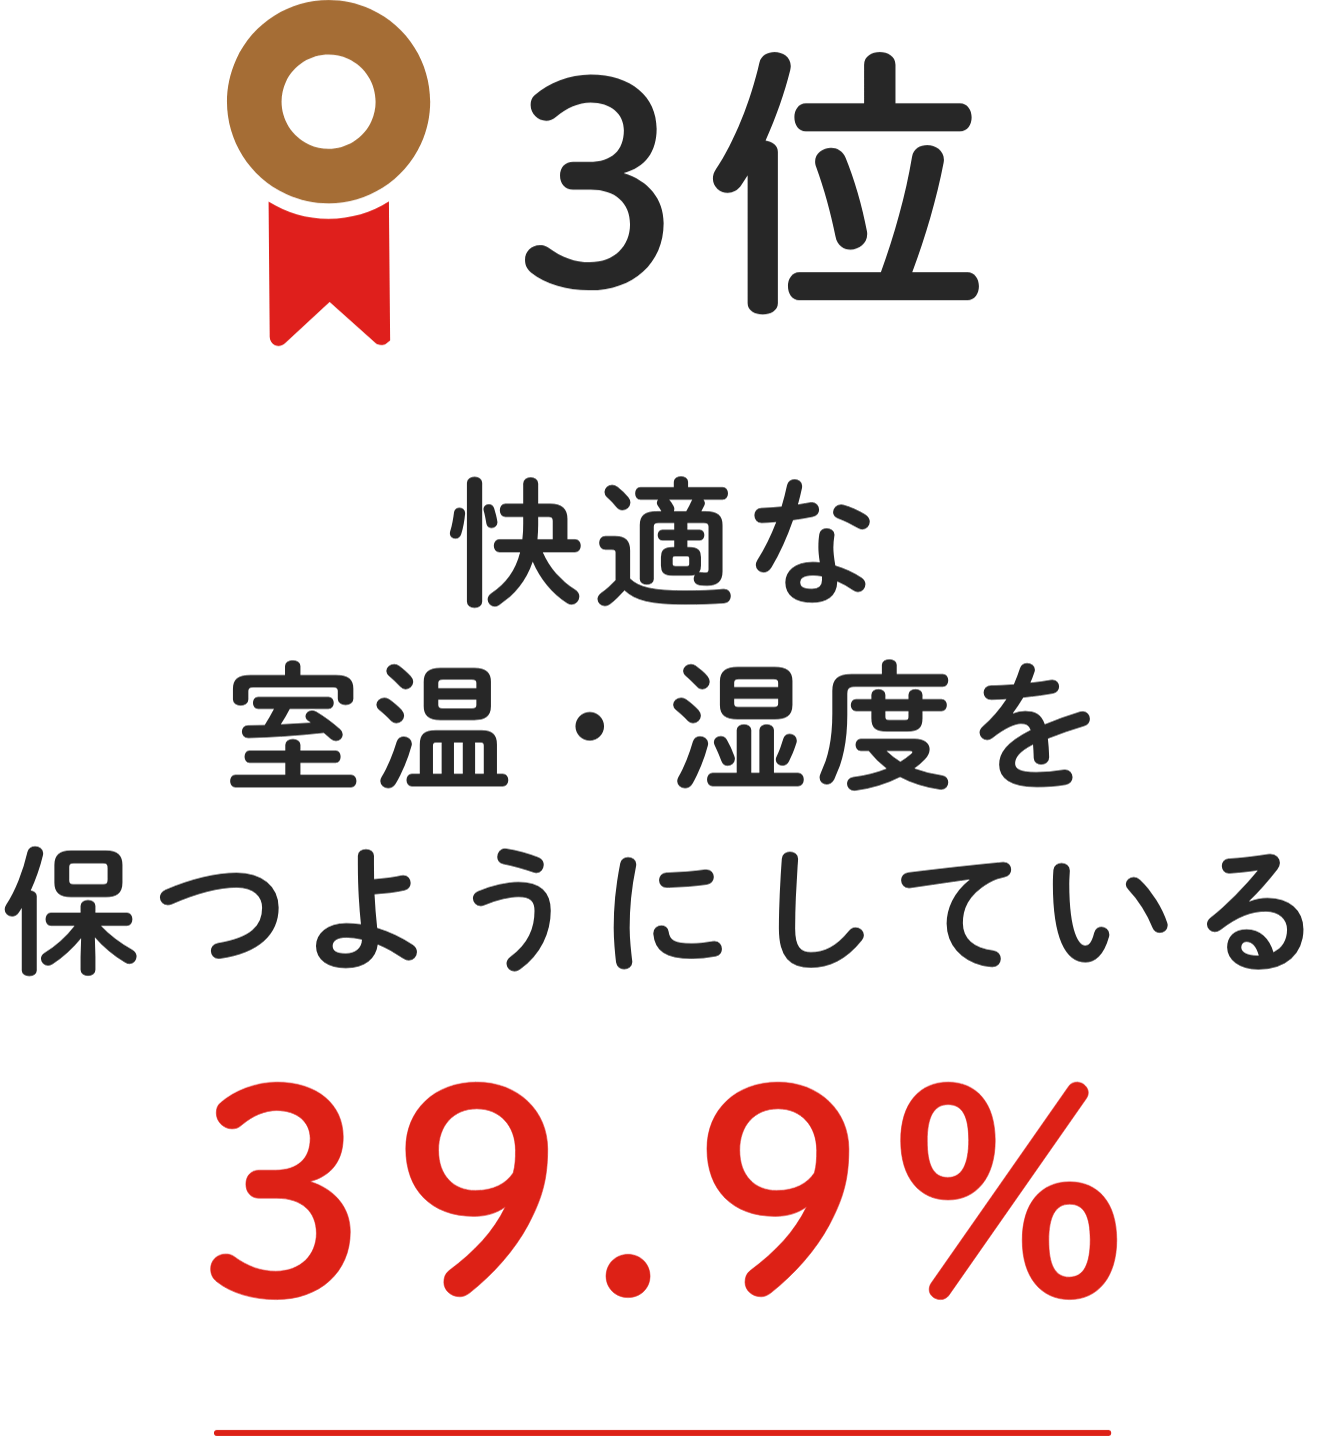 3位 快適な室温・湿度を保つようにしている 39.9%